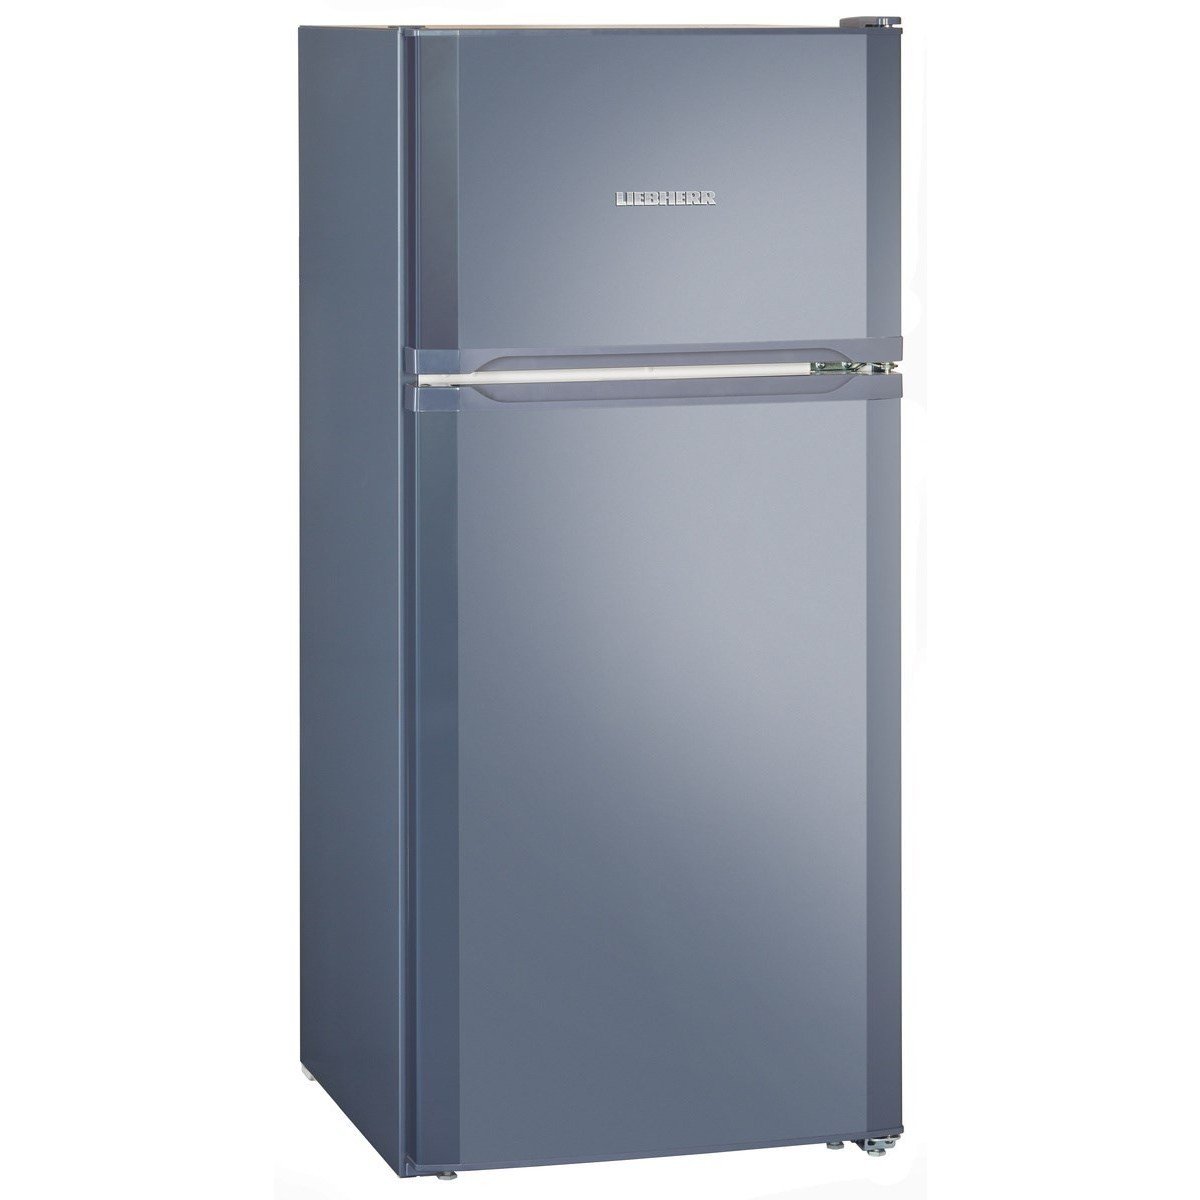 Спб купить холодильник недорого двухкамерный. Холодильник Liebherr с верхней морозильной камерой. Холодильник Liebherr CTP 2121. Холодильник Либхер синий. Холодильник Либхер голубой.